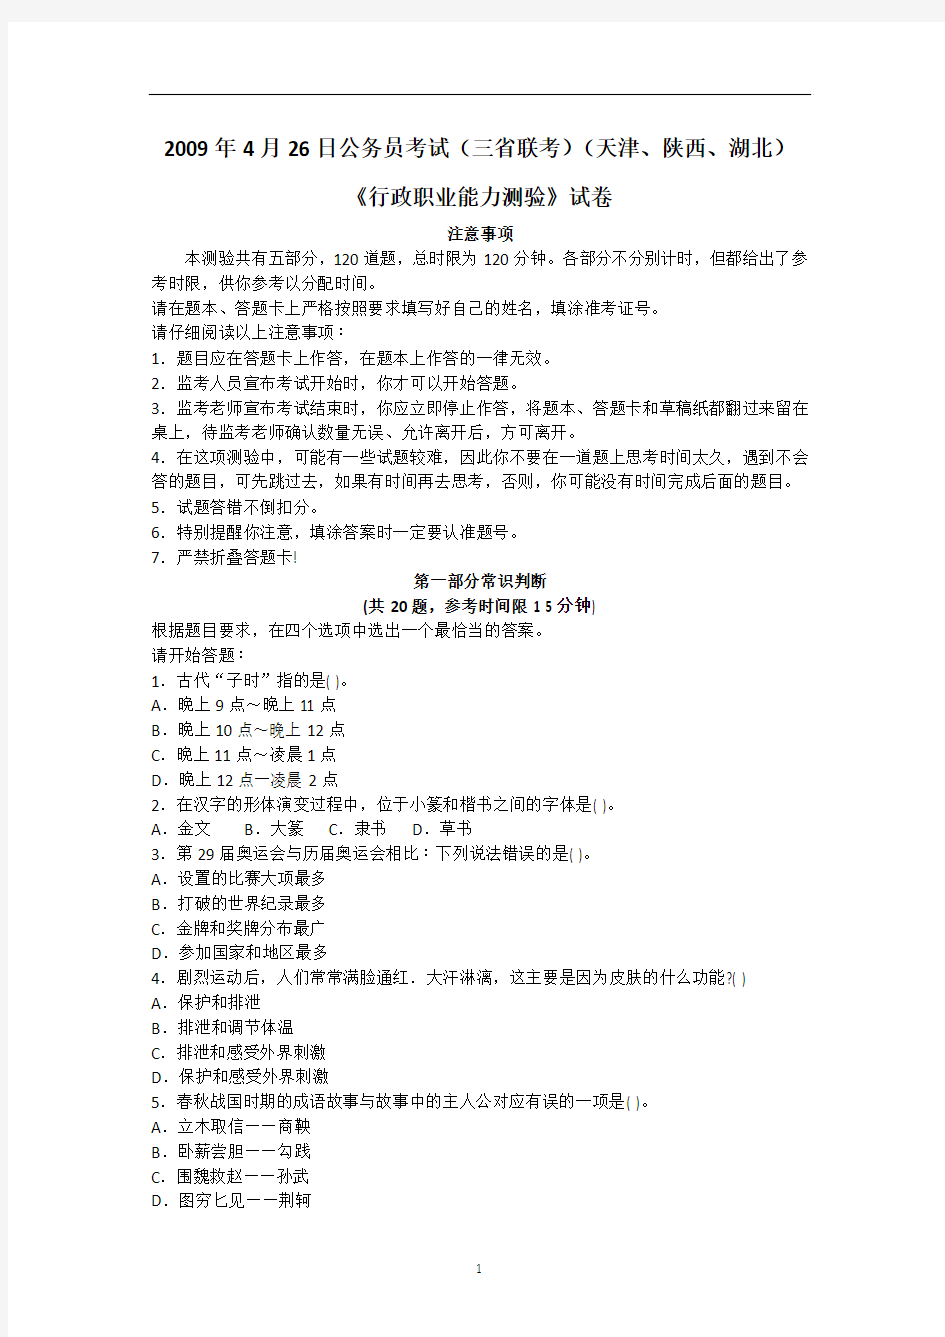 2009年陕西省公务员考试行测真题及答案解析(打印版)